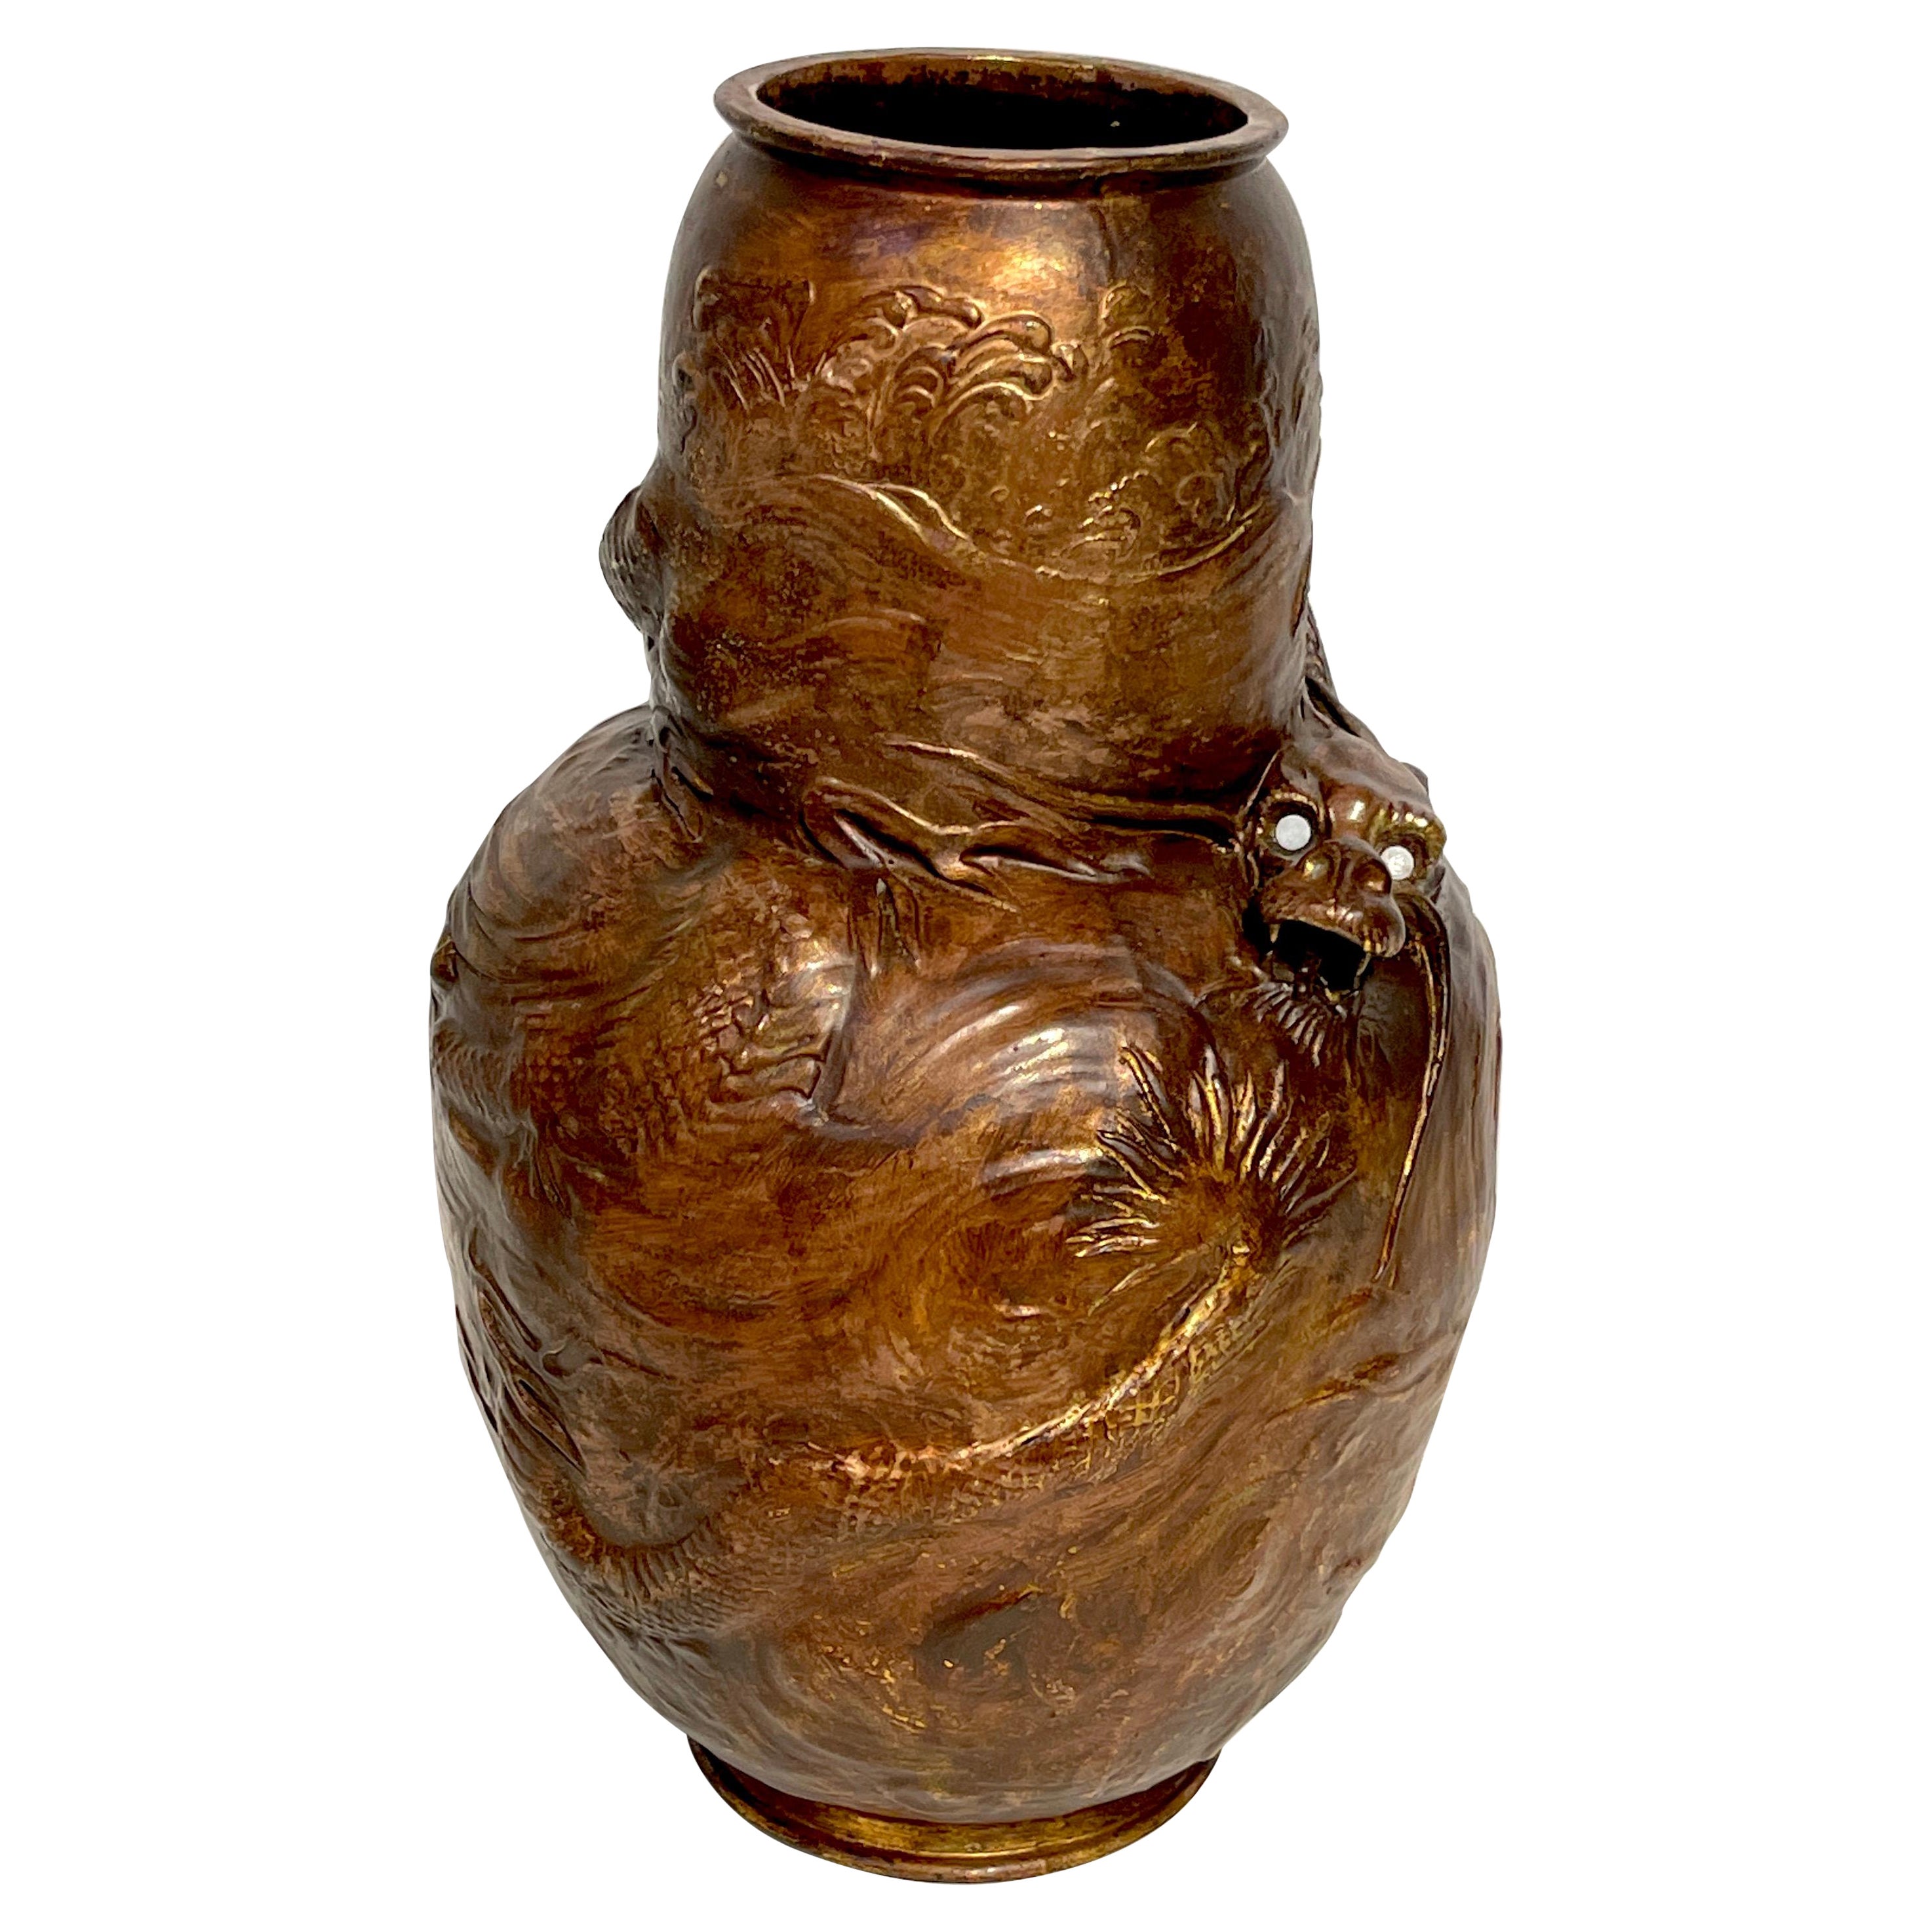 Japonisme Dragon Motif Copper Clad Vase by Bretby Pottery 